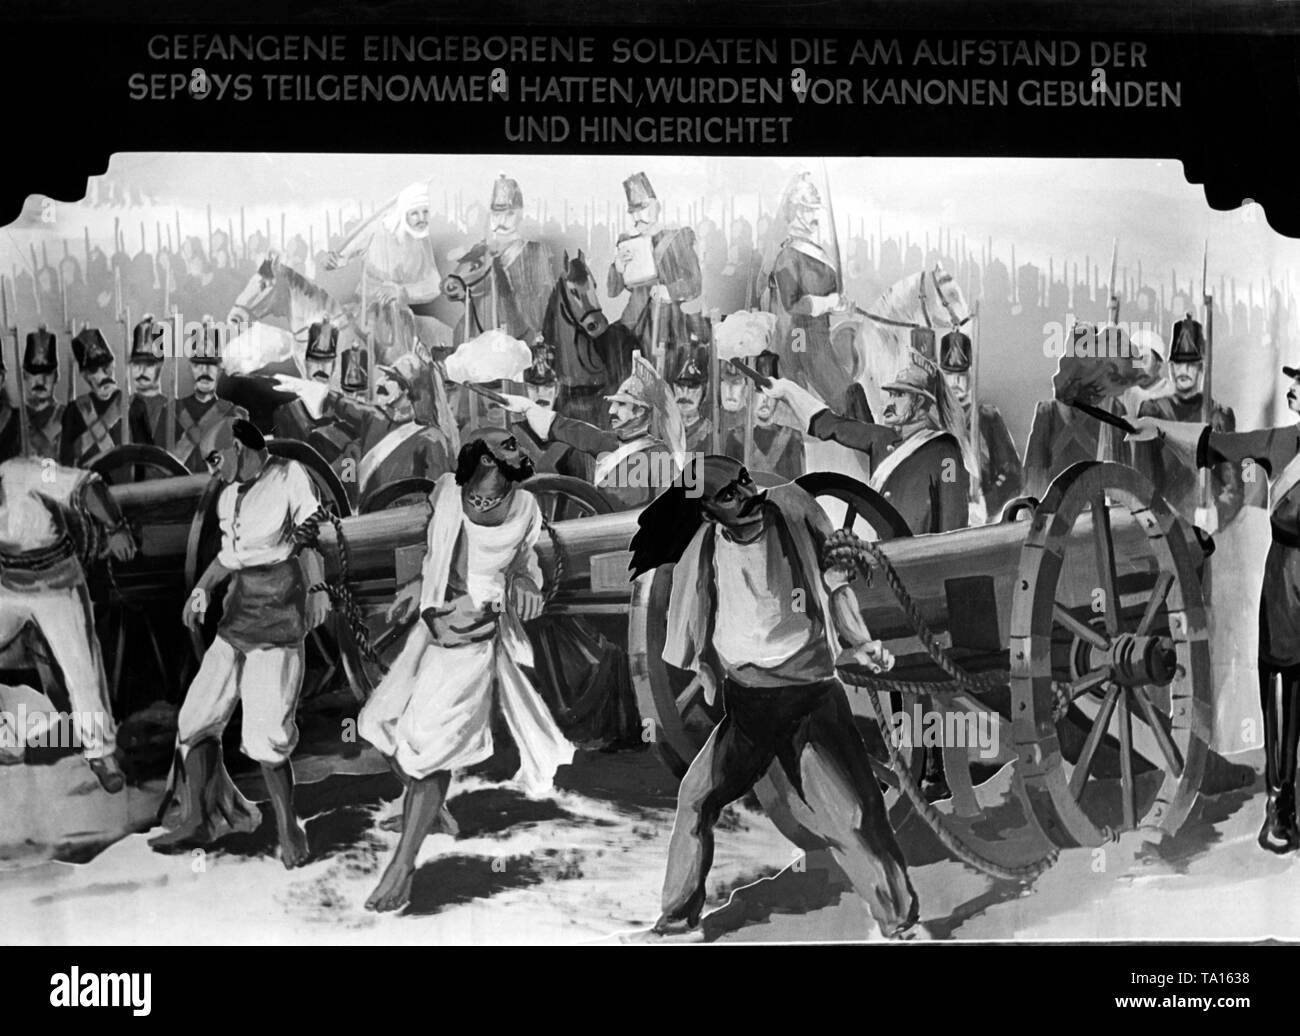 Esta exhibición de propaganda anti-británica de la exposición 'Raubstaat England' en Rathaus Schoeneberg muestra prisioneros de la rebelión de los cipayos (indios), el cual fue sometido por los británicos en 1857. Foto: Hoffmann Foto de stock